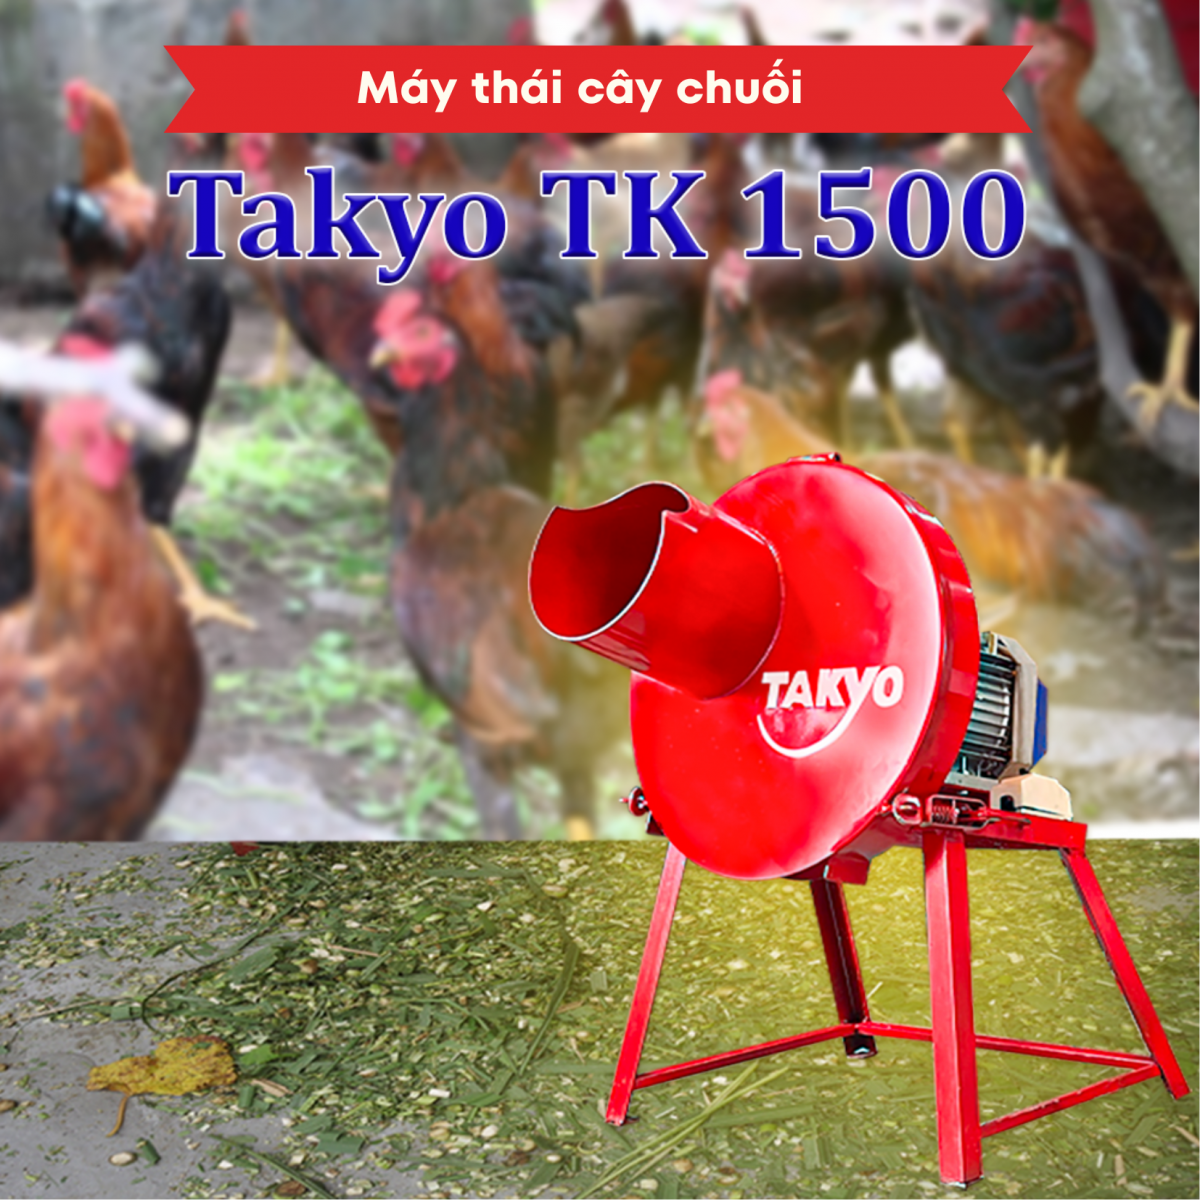 Máy thái cây chuối Takyo TK 1500 cực kì chất lượng. Giúp bà con có thể thái được những cây chuối to cực kì dễ dàng.